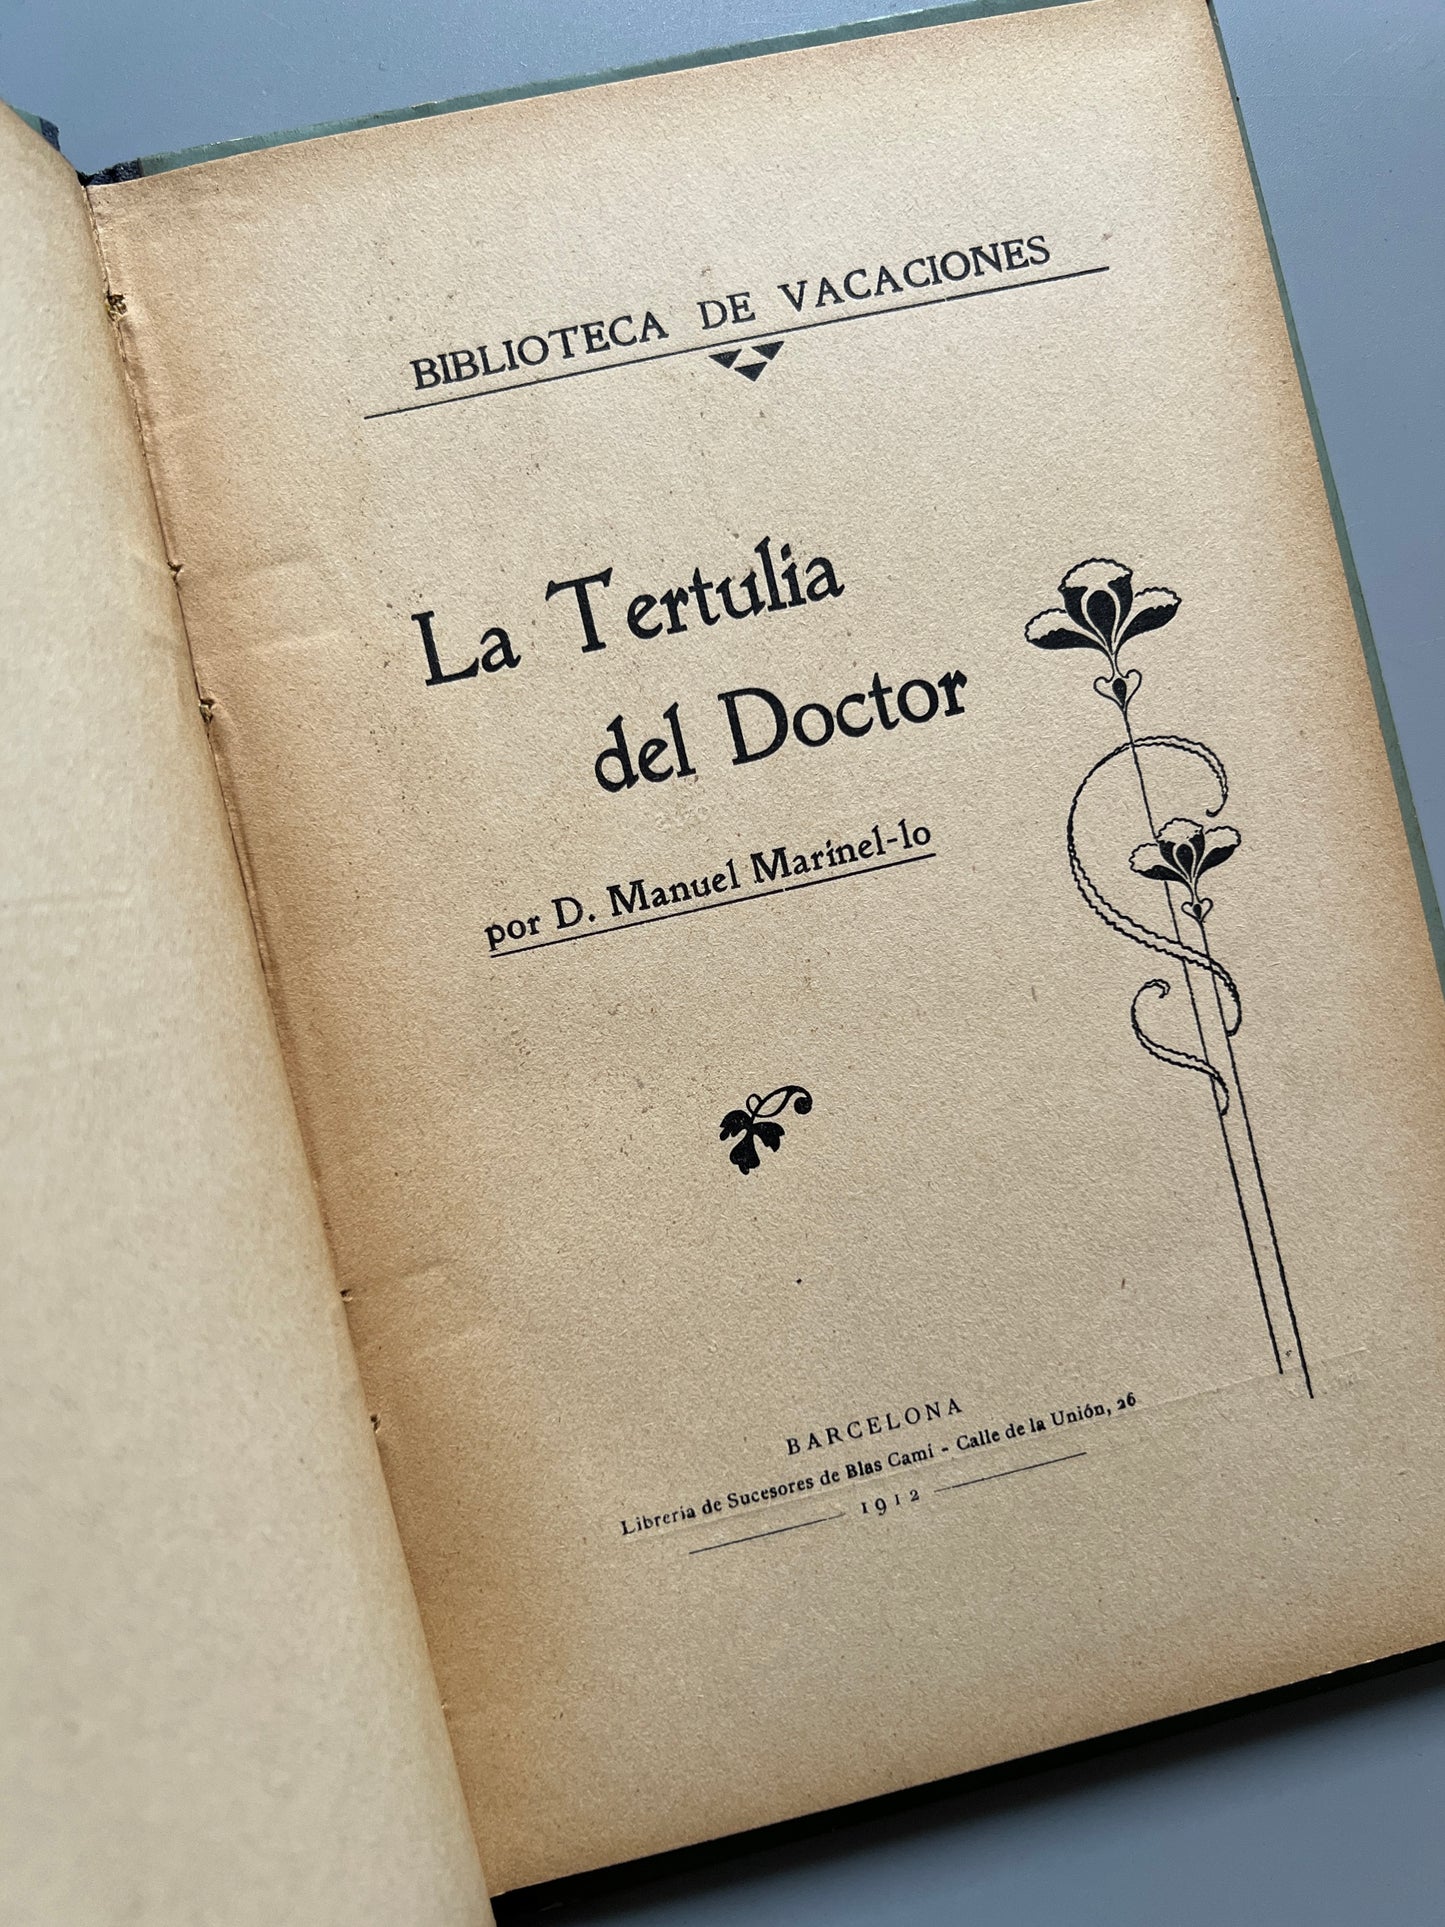 La tertulia del doctor, Manuel Marinel·lo - Biblioteca de vacaciones, 1912